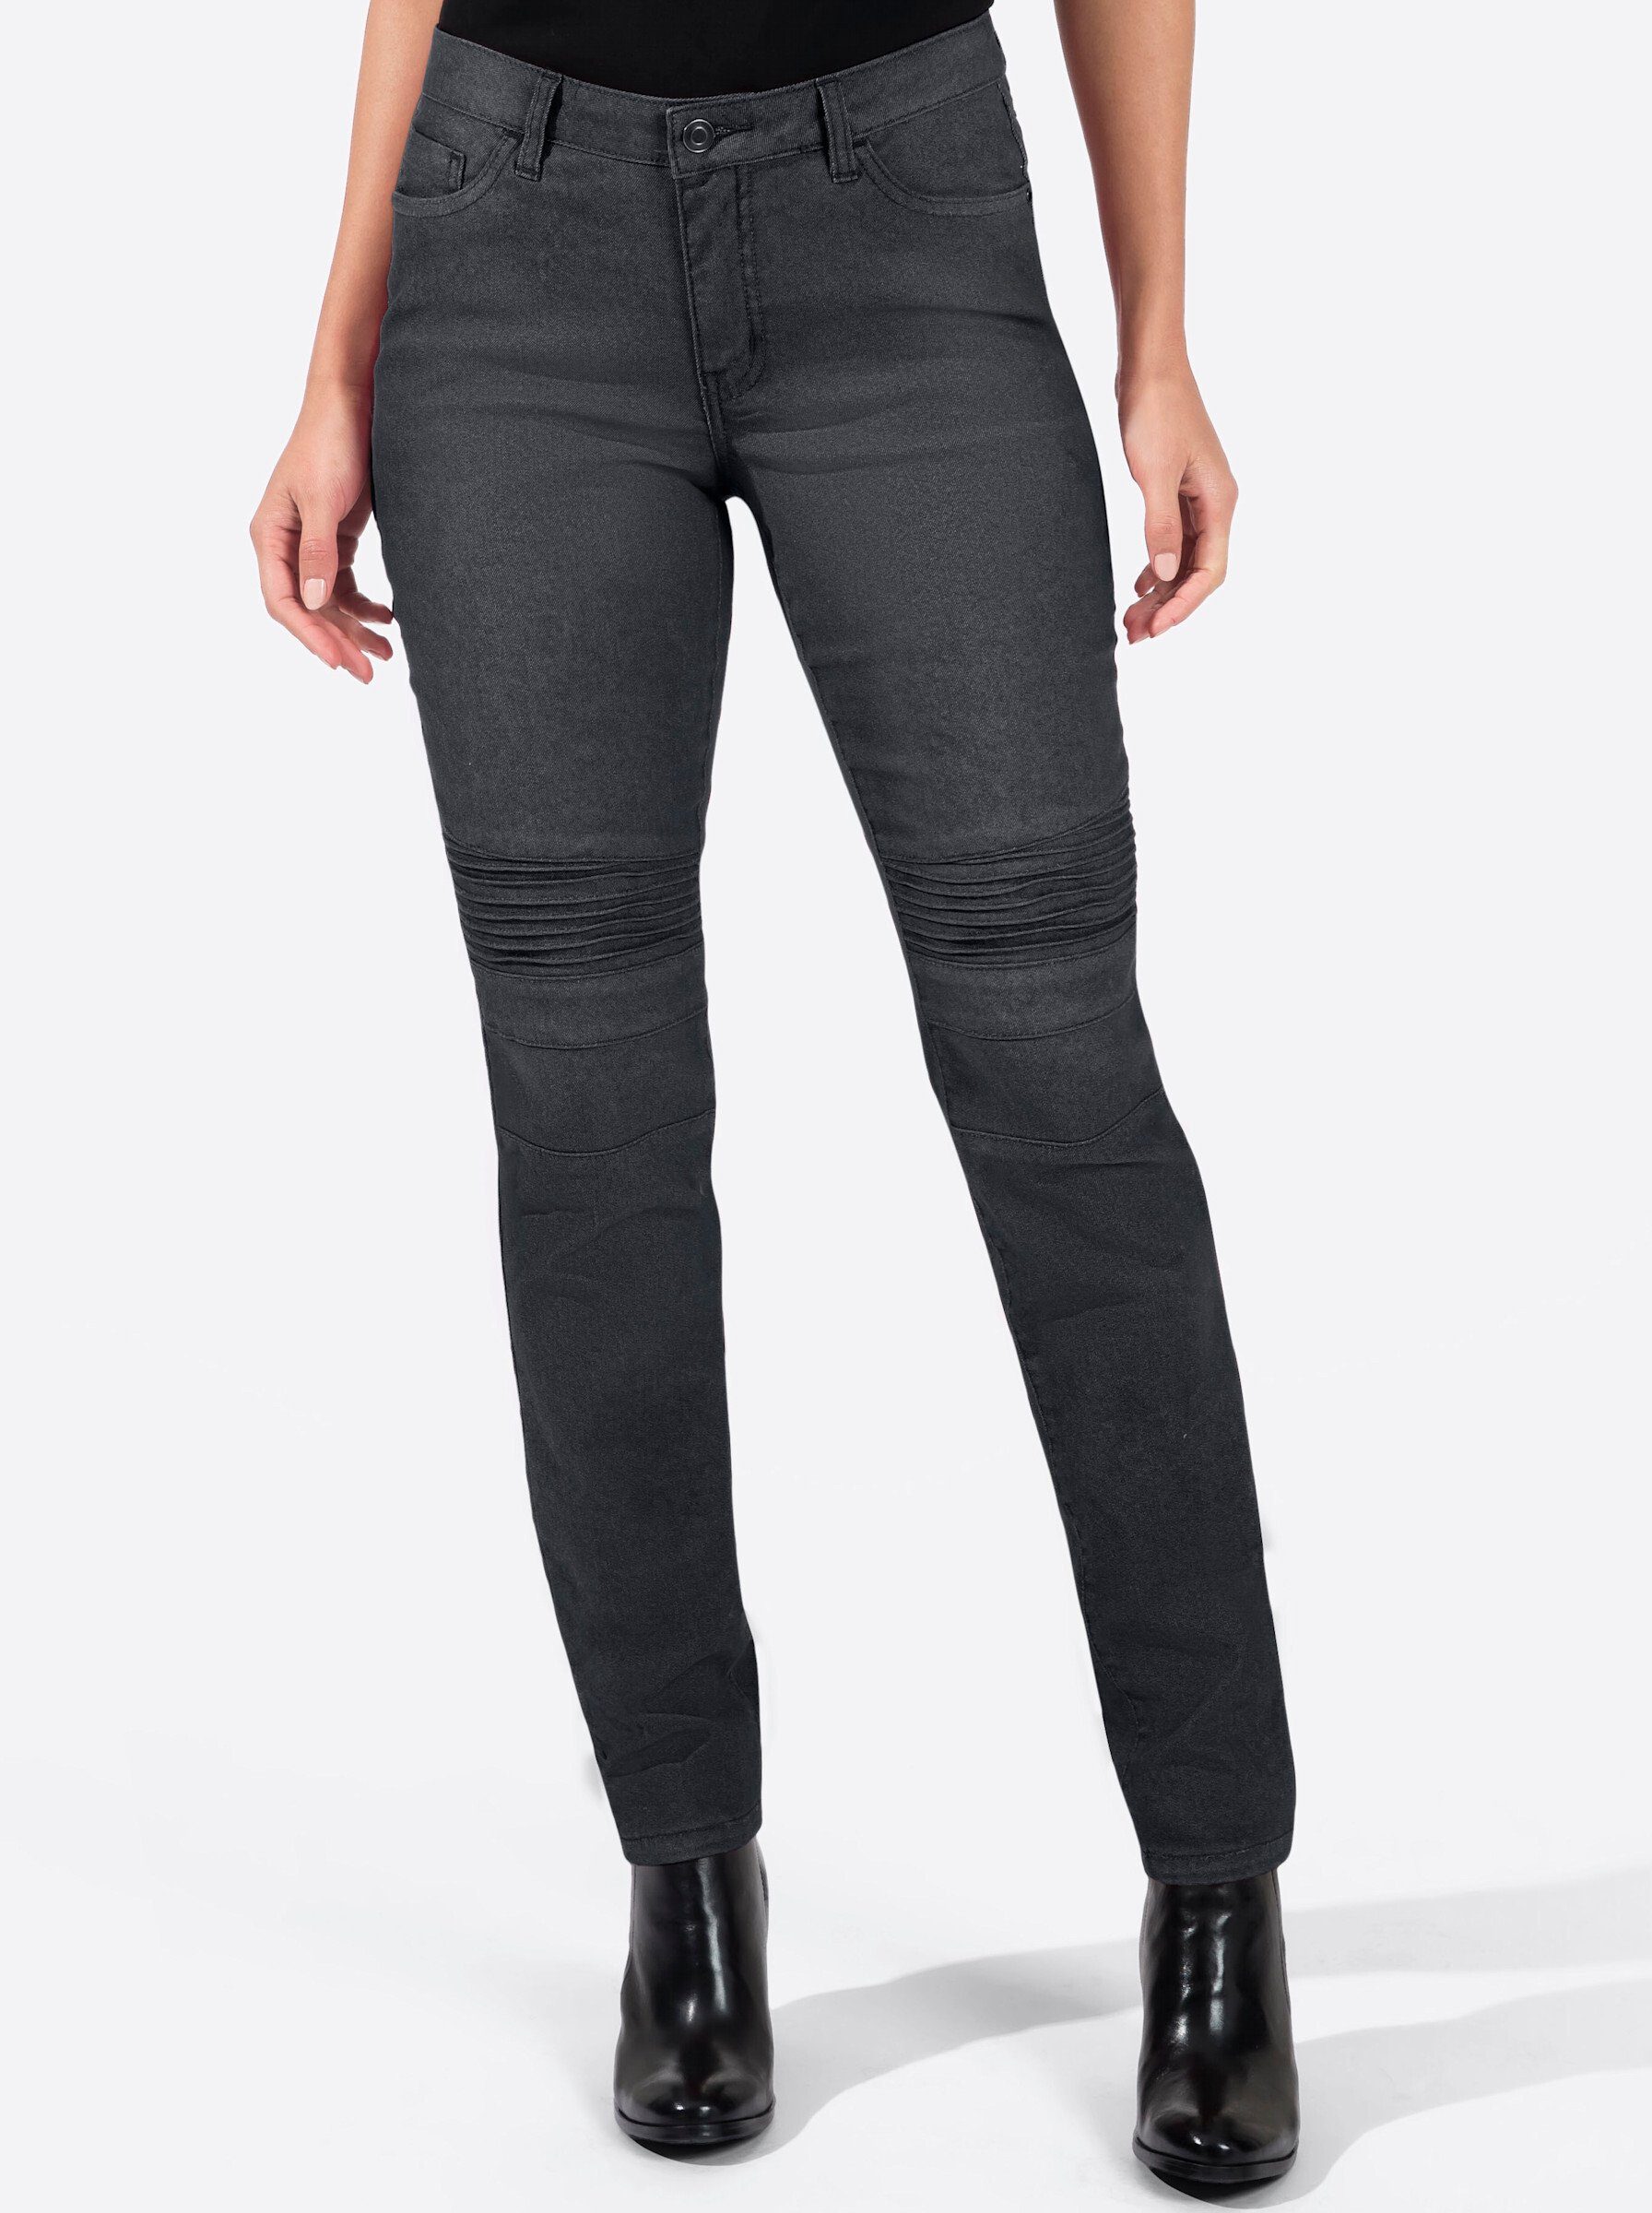 WITT WEIDEN Bequeme Jeans black-denim